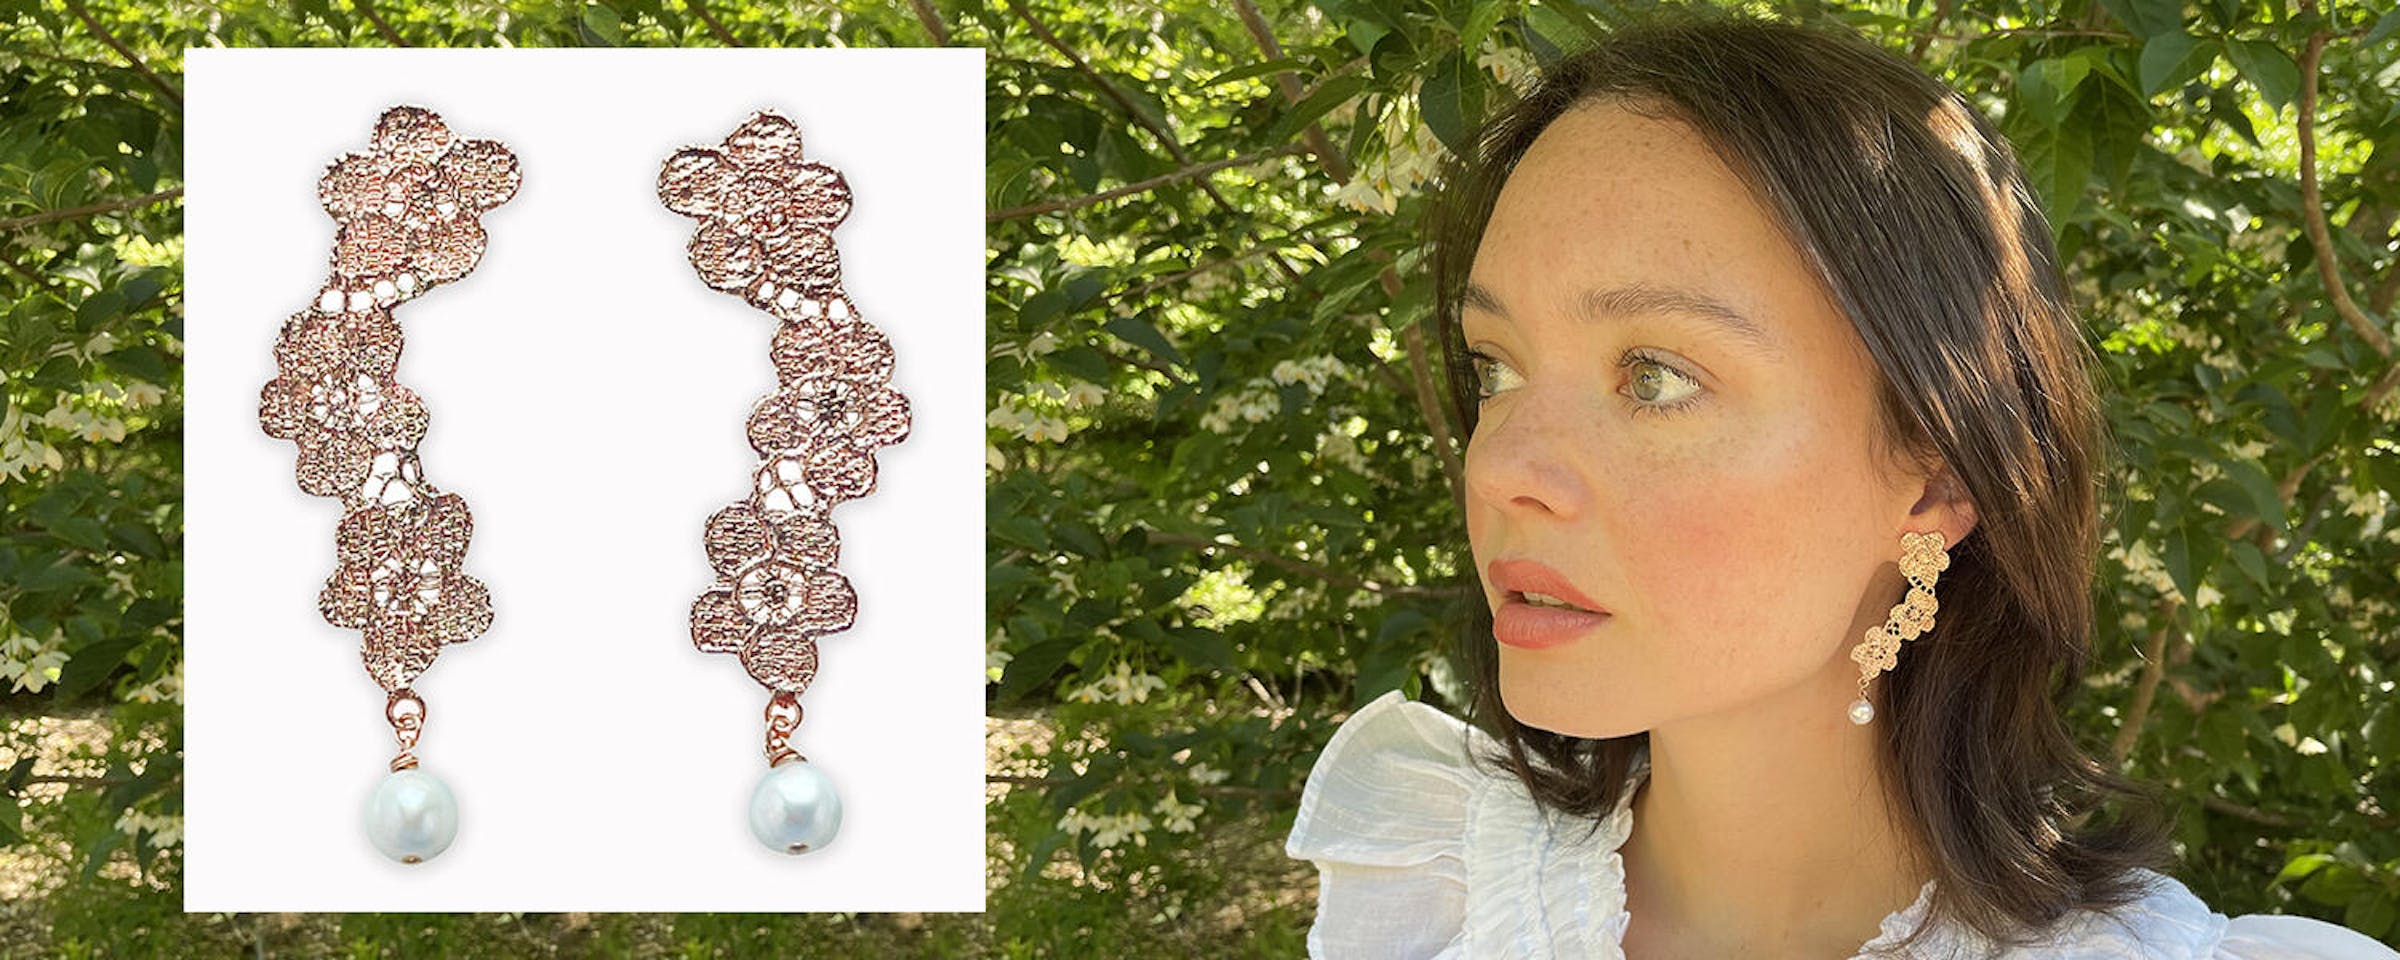 Ella Lace Flower Earrings in sterling silver and 24k gold - Monika